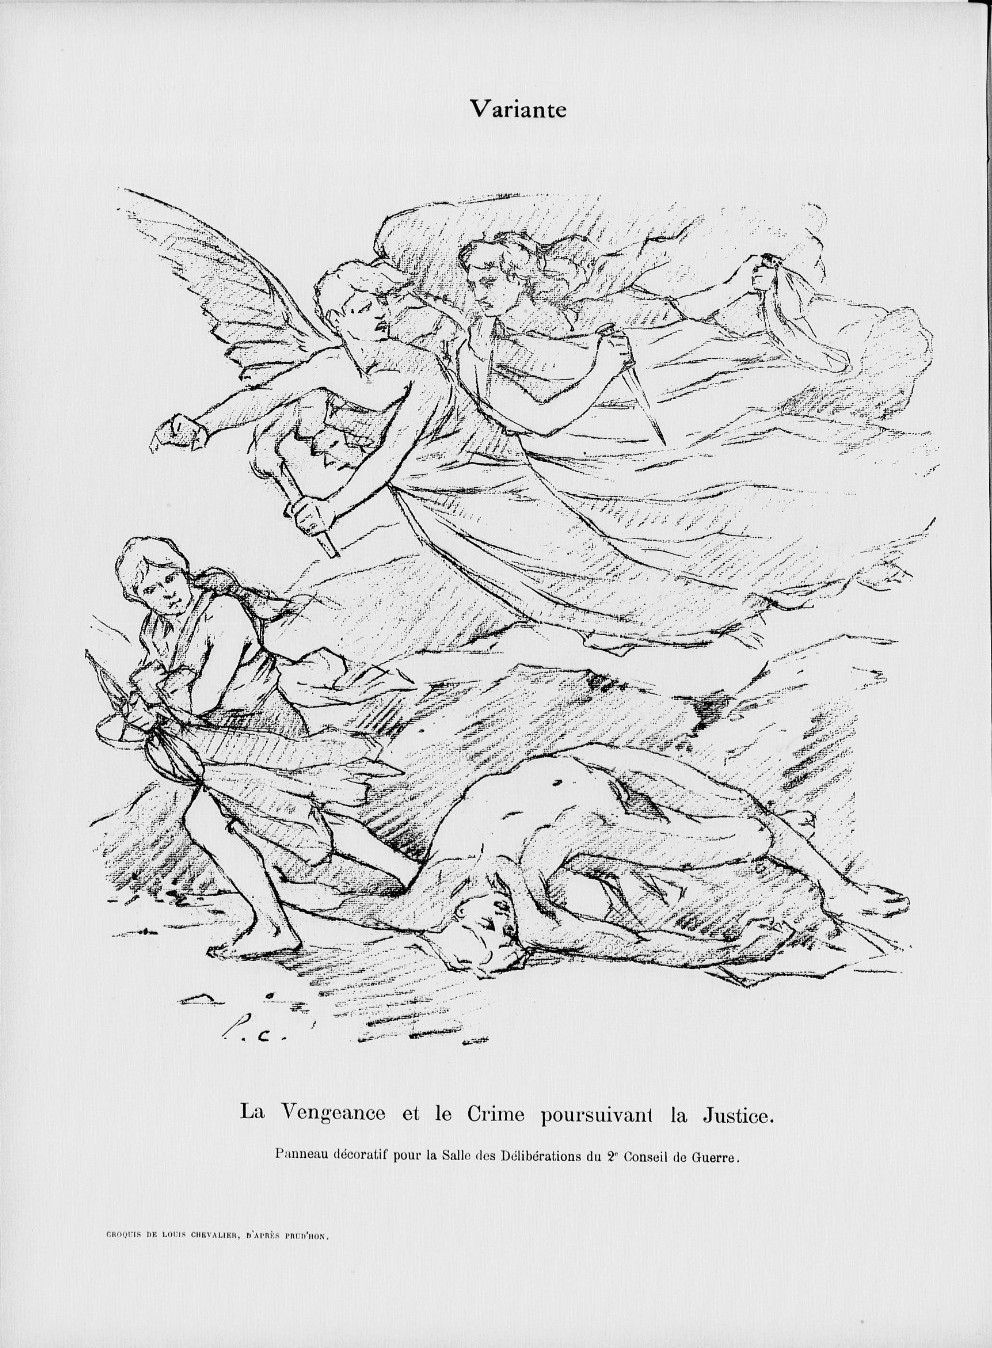 Dessin de Léon Chevallier  "La Vengeance et le Crime poursuivant la Justice" - "Le Sifflet" numéro du 2 décembre 1898 (Source Gallica-BNF) 